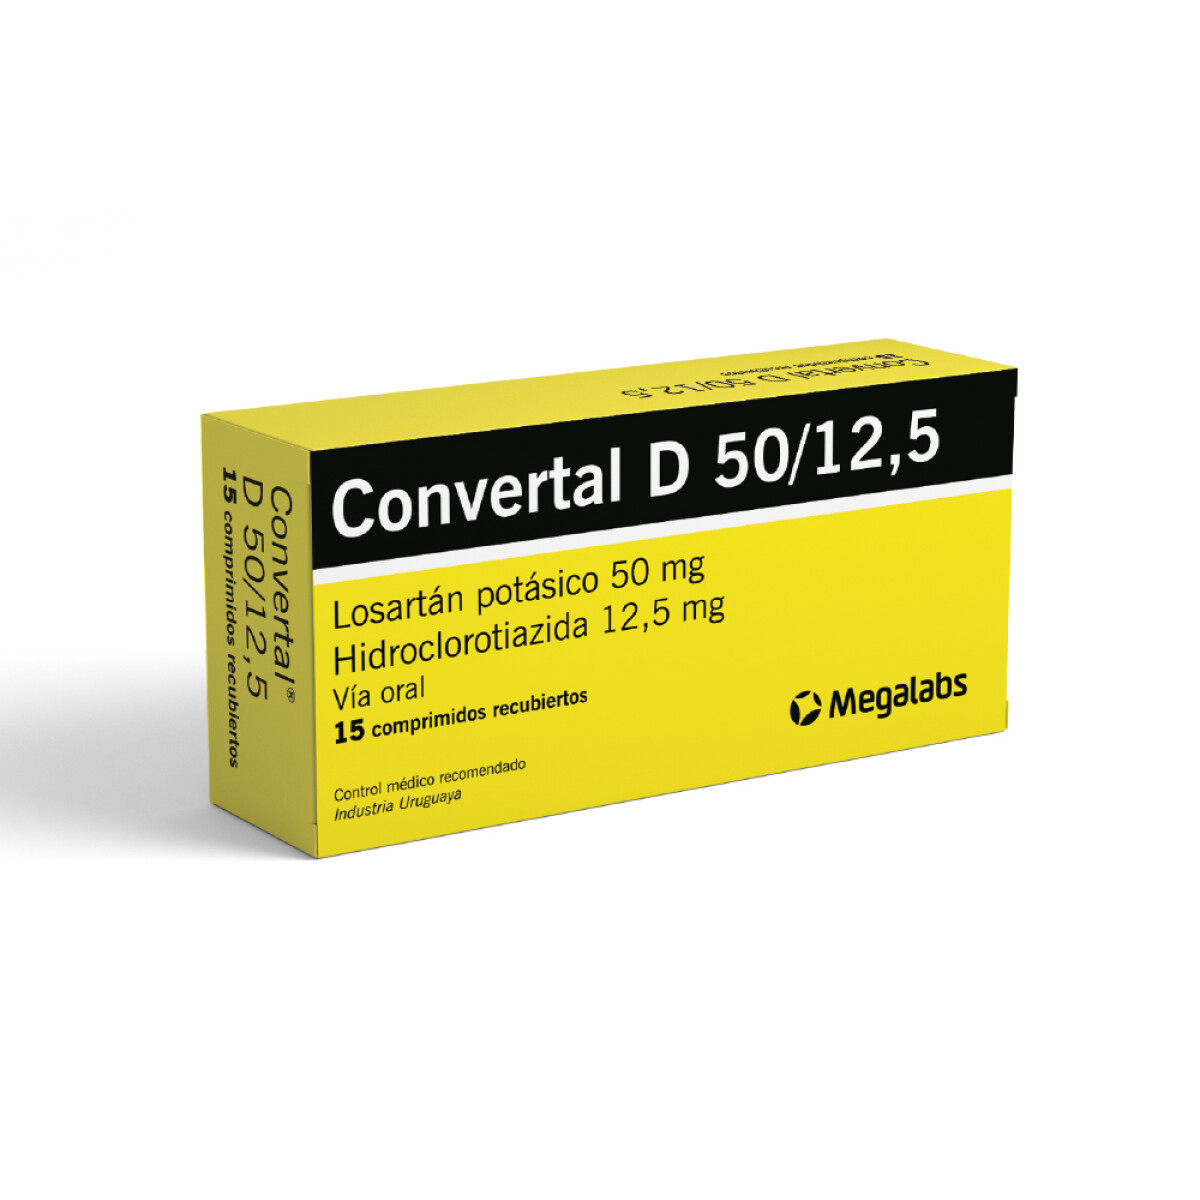 Convertal D 50 Mg./12.5 Mg. 15 Comp. 